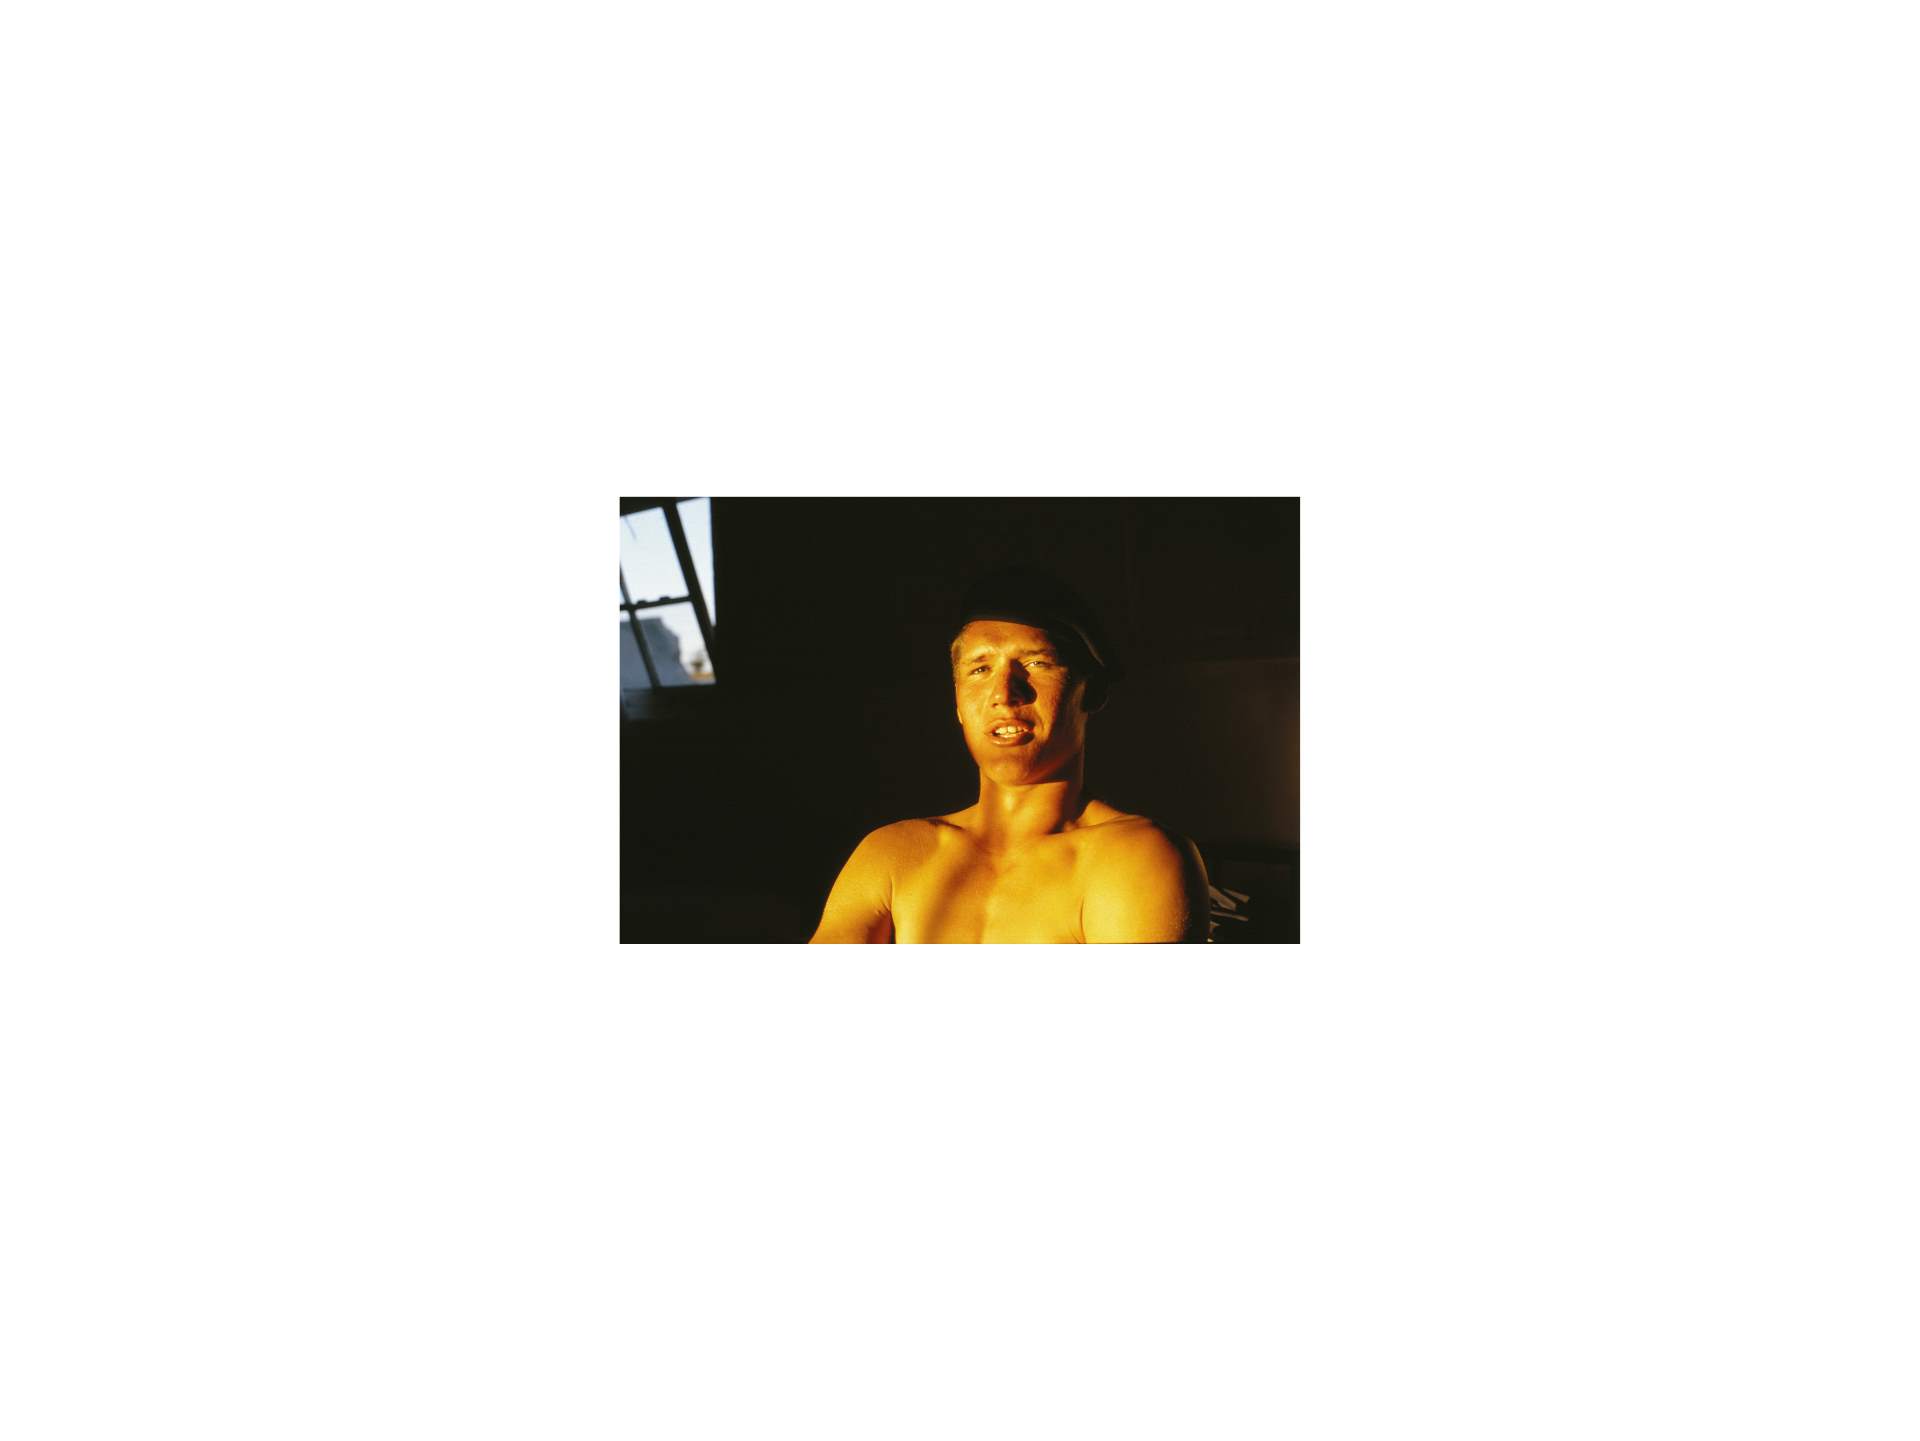 Stephen Symons, Conscript portrait, SAS Saldanha, February 1990, Digital print from slide, 59.8 cm × 79.7 cm (23 ½ in. × 31 in.)